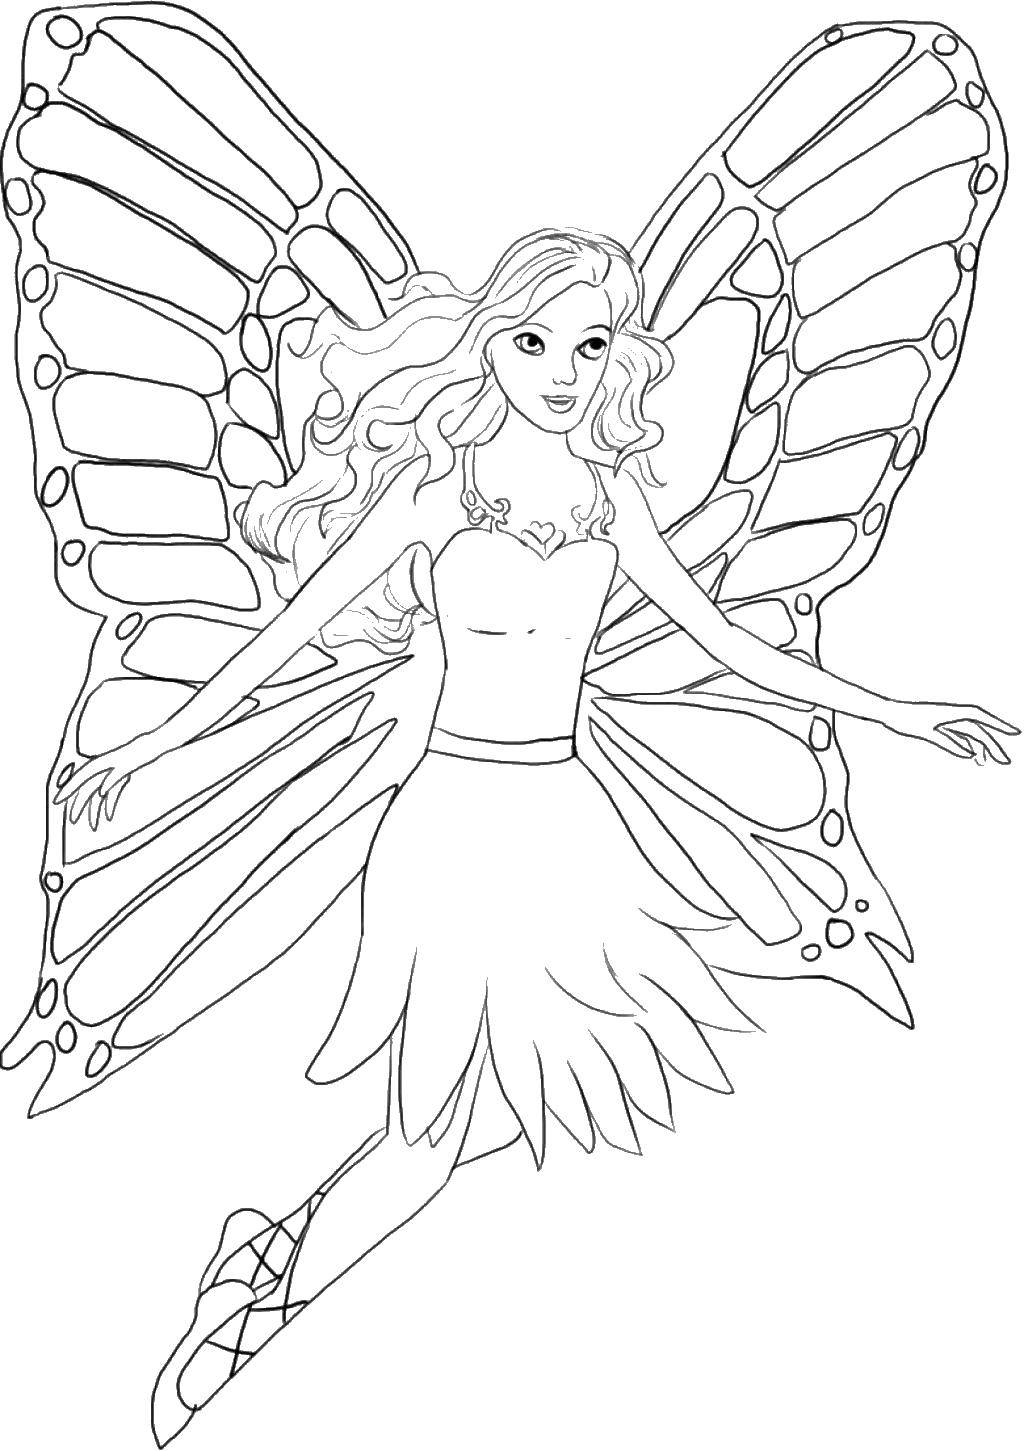 Название: Раскраска Фея. Категория: Винкс. Теги: феи, девочки, для девочек, крылья.